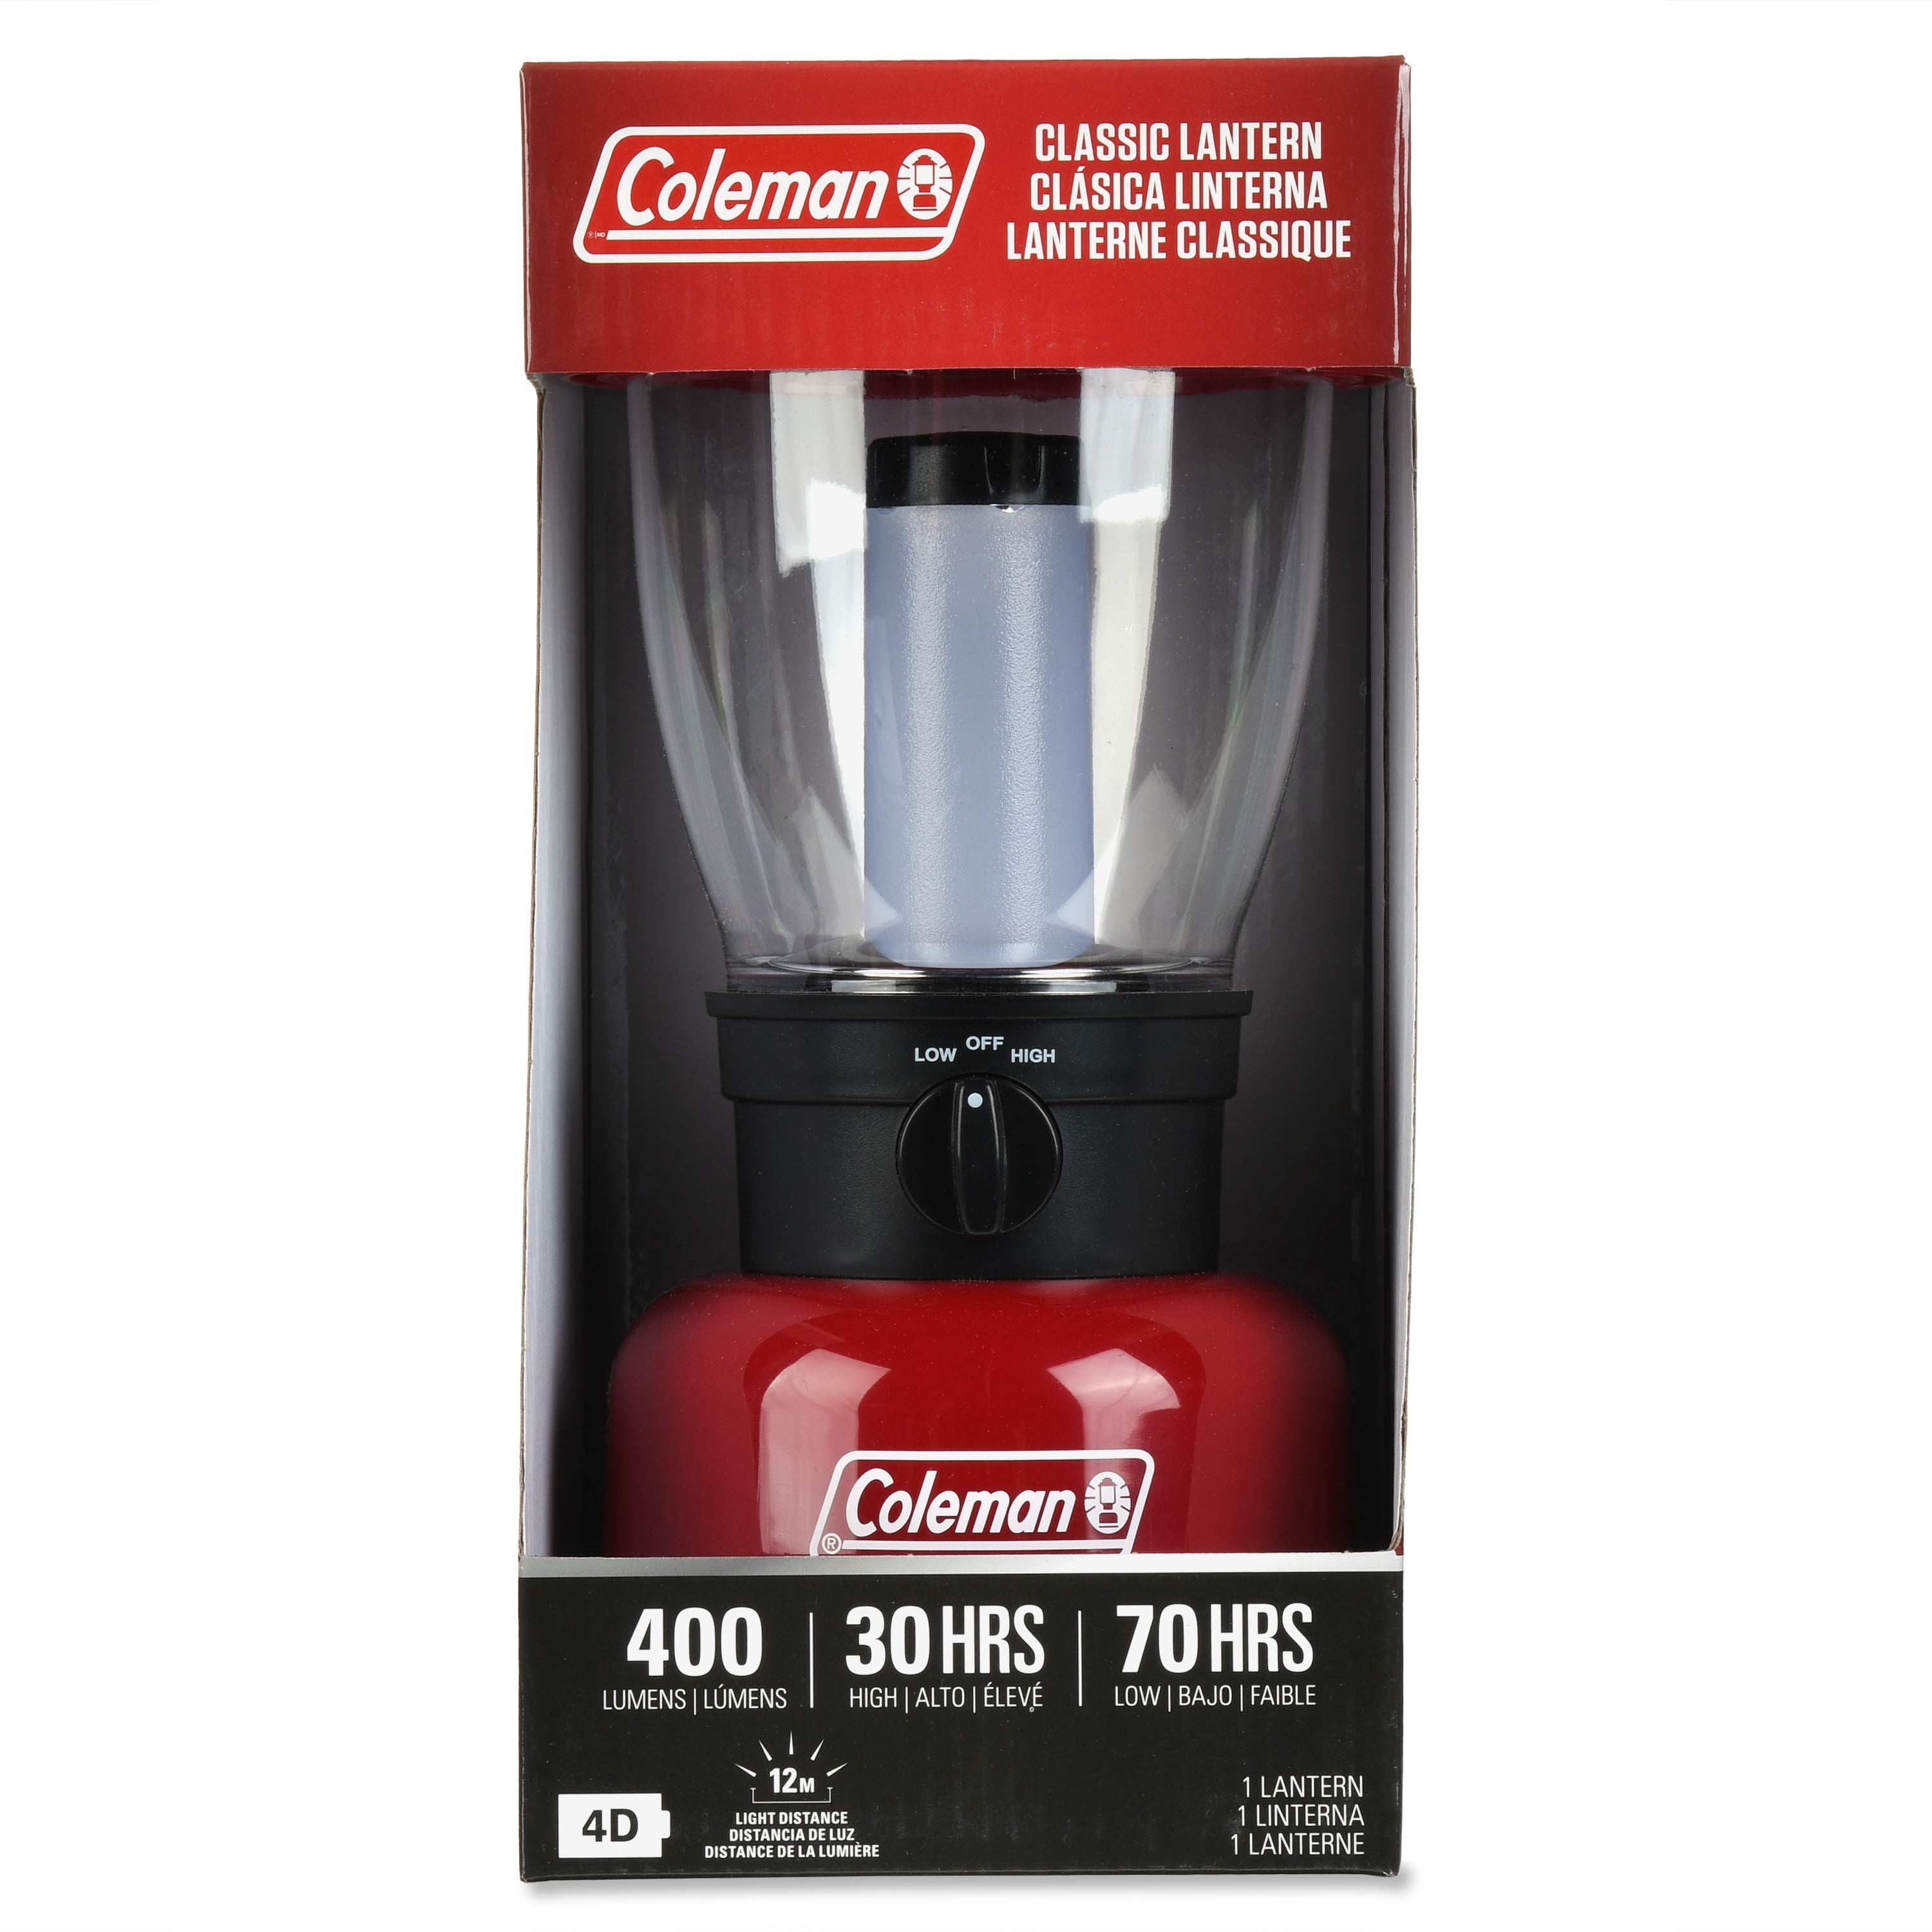 verwennen Voorkeur Polijsten Coleman Carabineer Classic Personal Size Water-Resistant 400 Lumens LED  Lantern, Red - Walmart.com